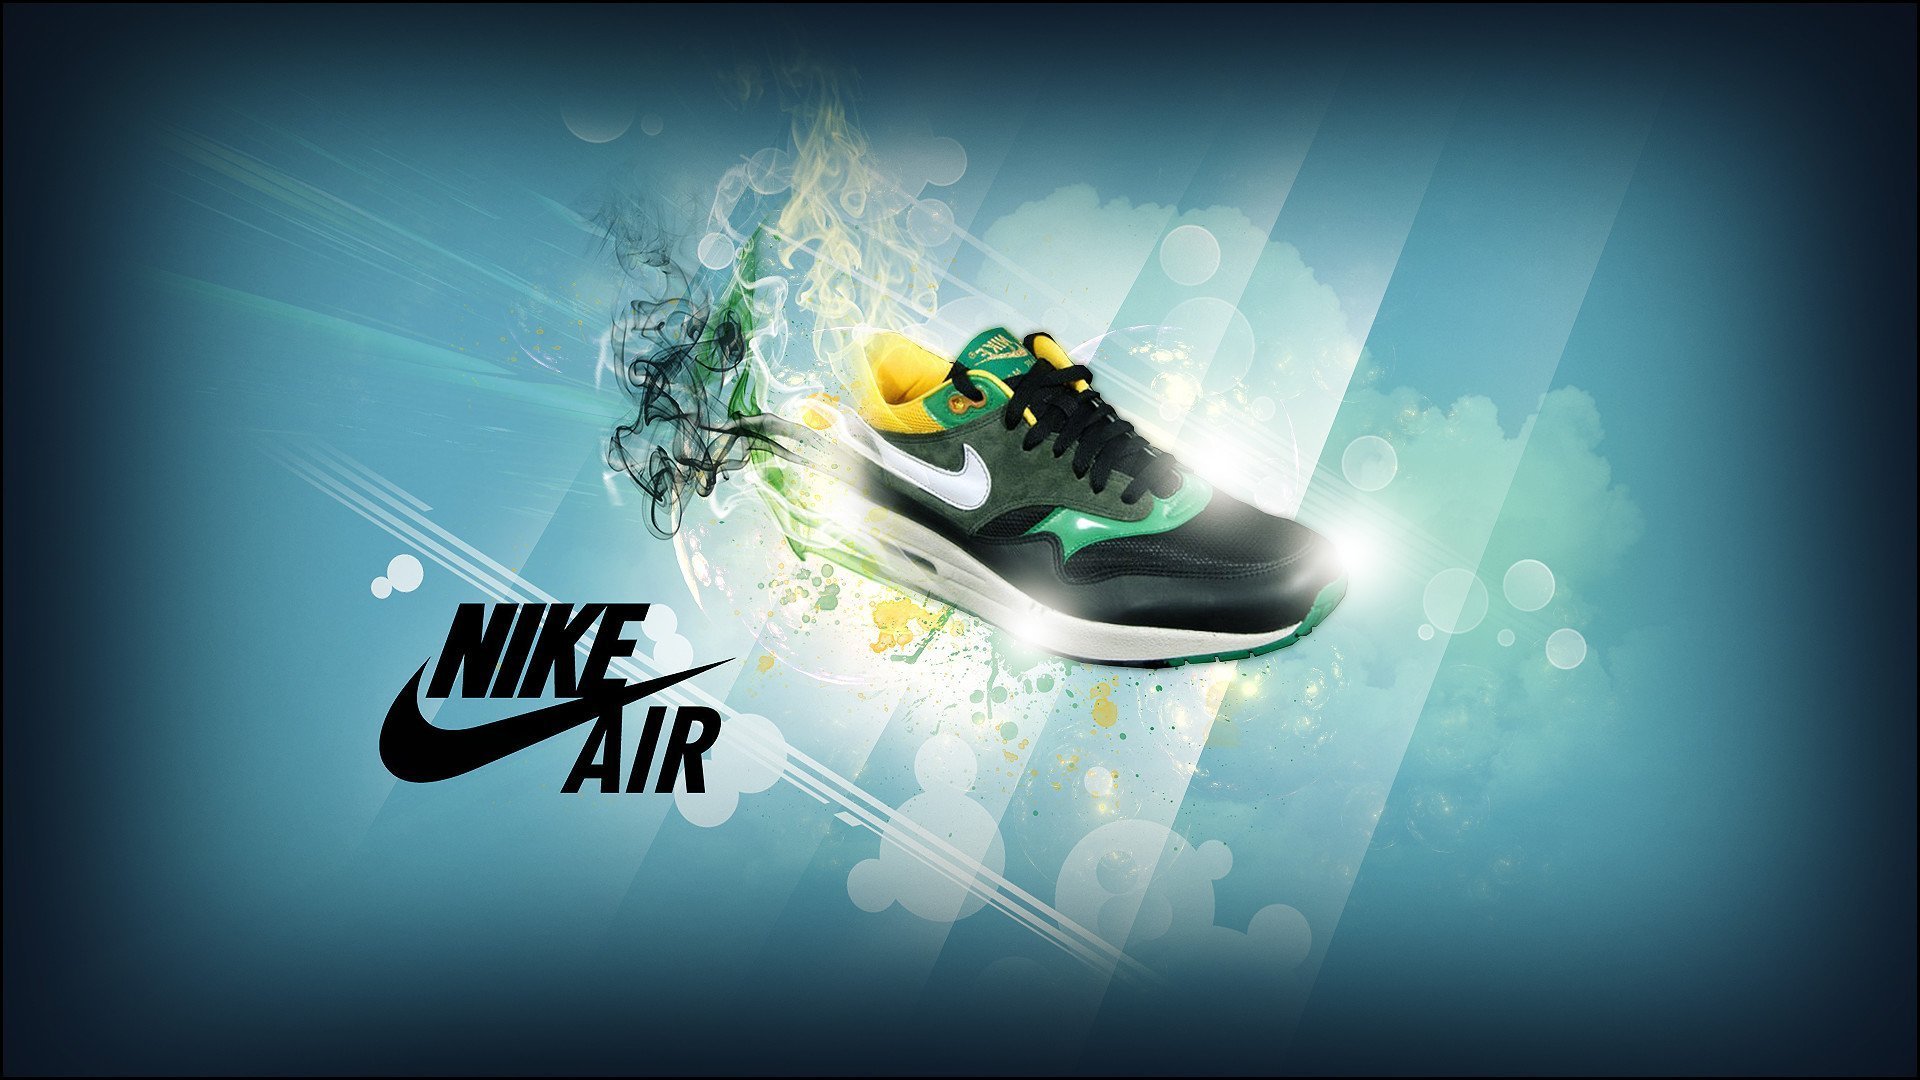 Найки игра. Nike 1080 Air. Найк с АИР Макс лого. Найк 4.